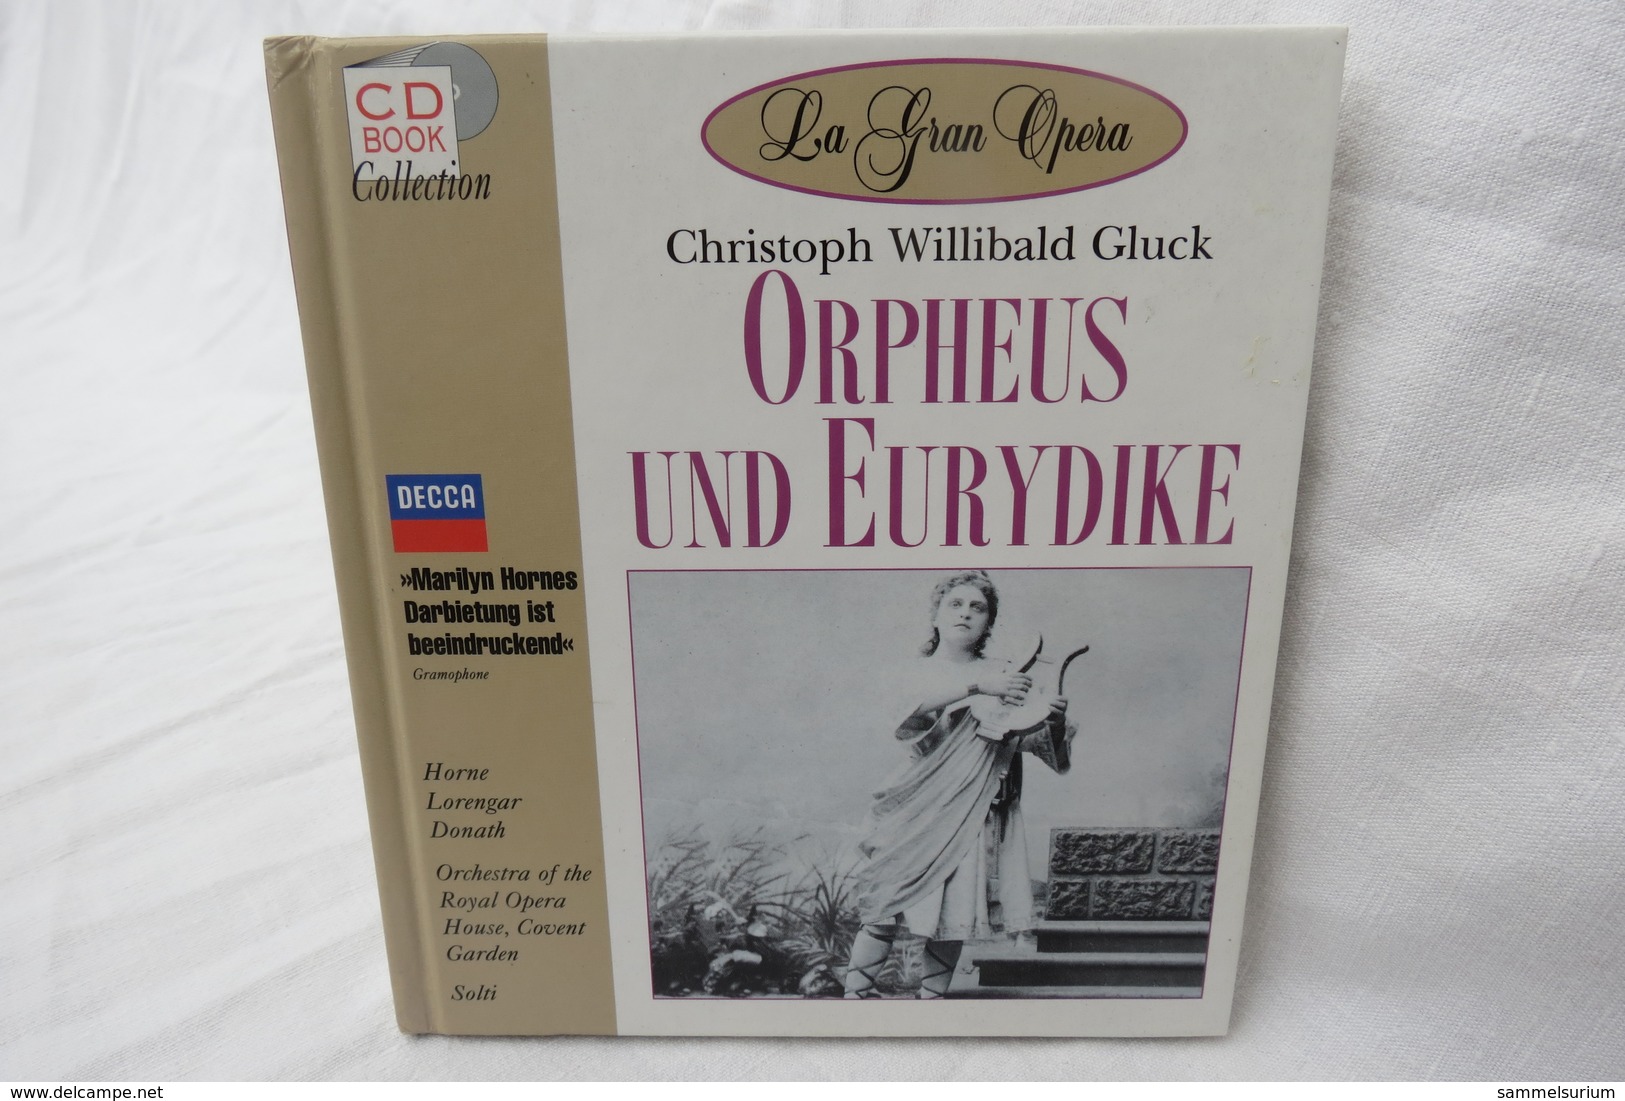 CD "Orpheus Und Eurydike / Christoph Willibald Gluck" Mit Buch Aus Der CD Book Collection (gepflegter Zustand) - Oper & Operette